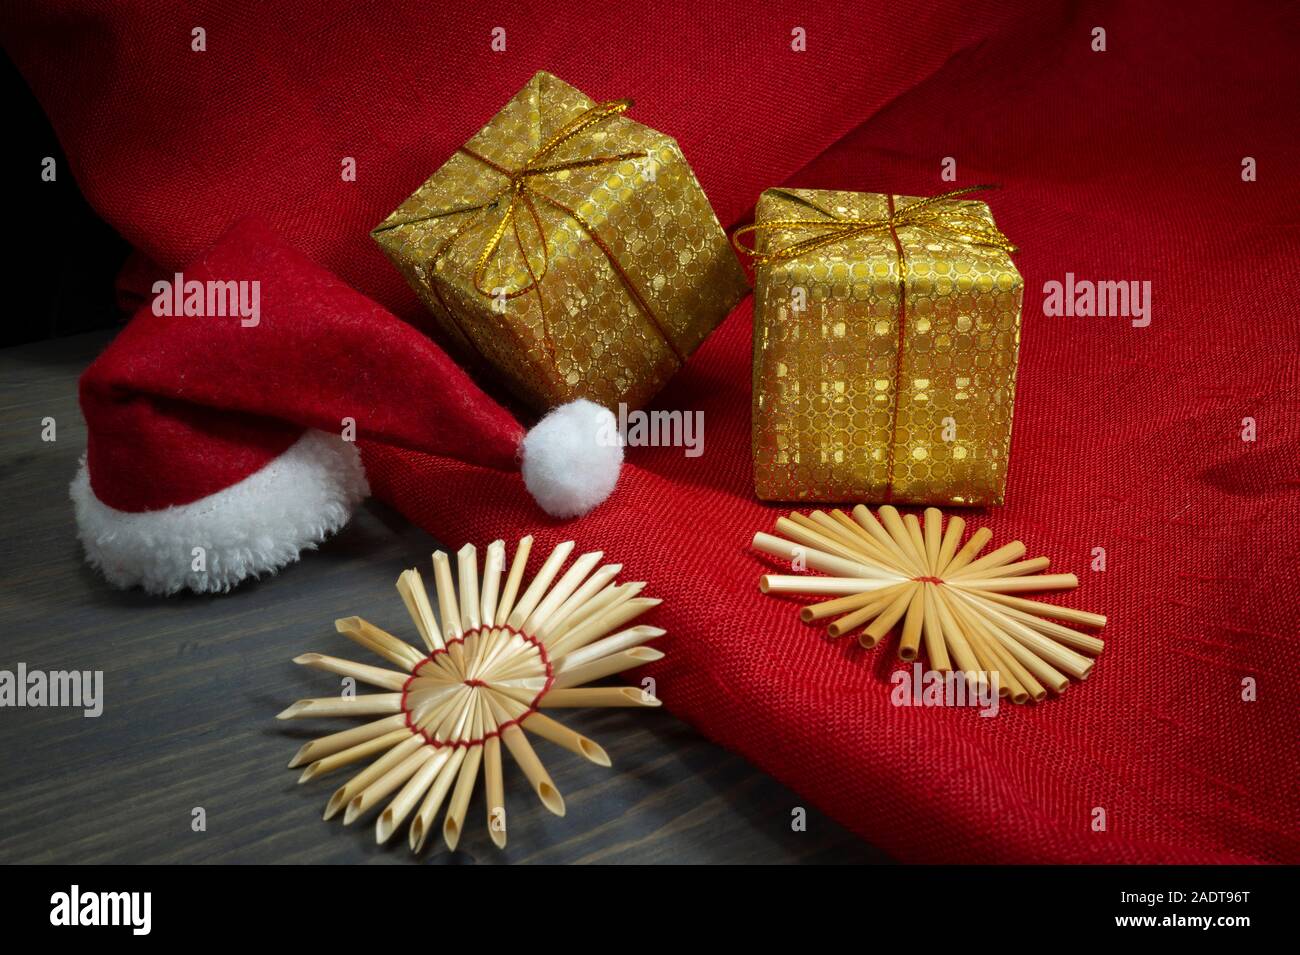 Noël encore la vie rustique avec des ornements de paille d'or, cadeau, une ambiance festive rouge Santa hat, tissu rouge correspondant sur un fond de bois, eco fr Banque D'Images